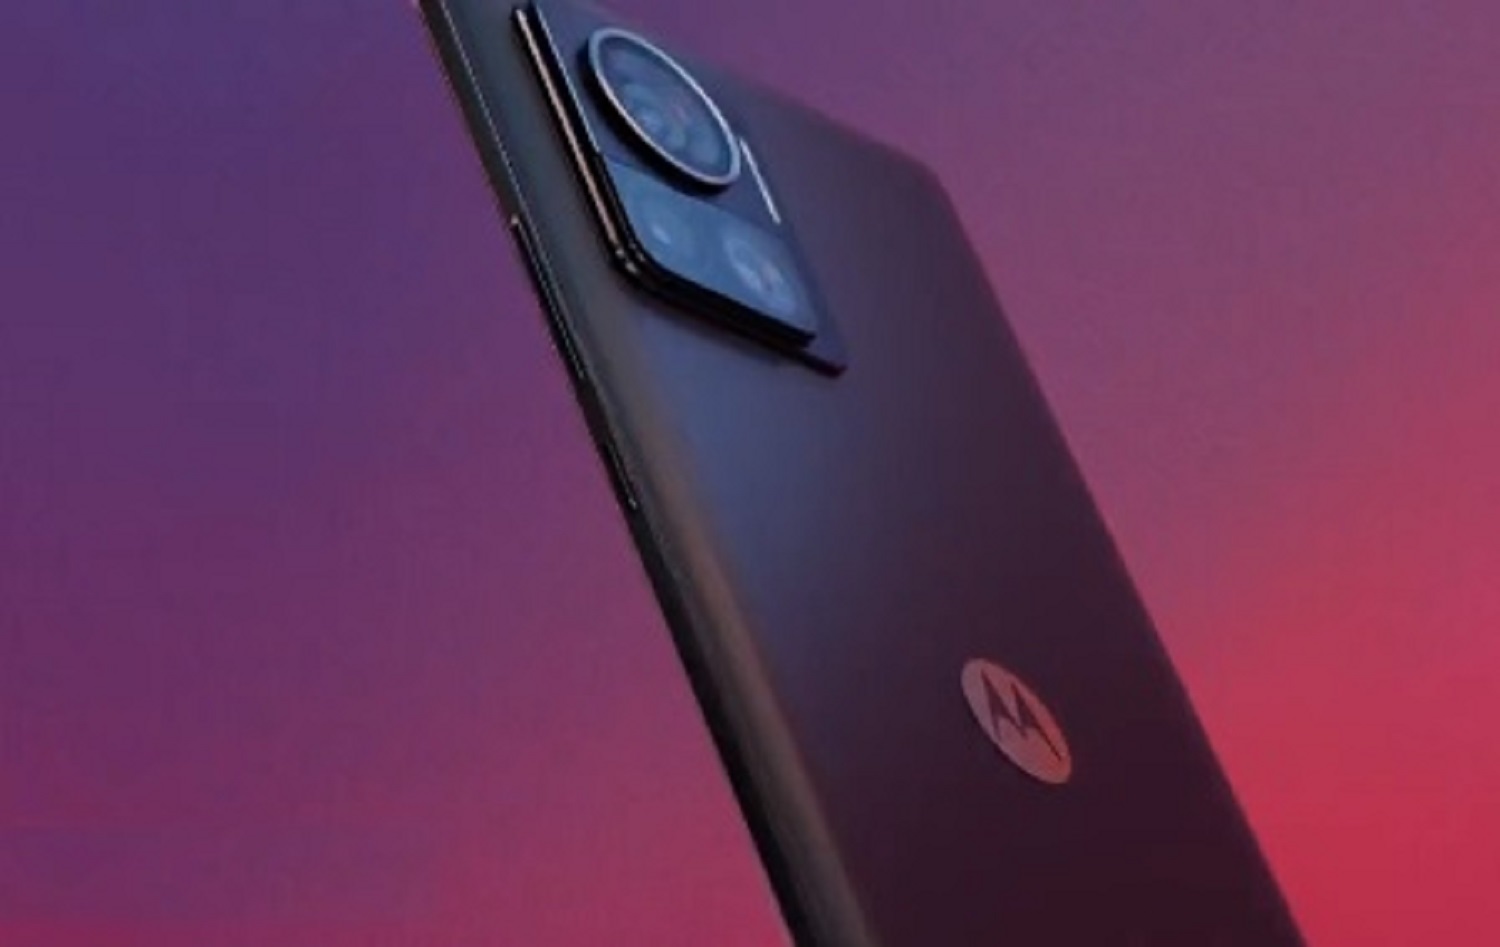  फ्लिपकार्ट की सेल में Motorola Edge 30 5G फोन को 24,999 रुपये की रियायती कीमत पर खरीदा जा सकता है. स्मार्टफोन 6.55 इंच के फुल एचडी+ एमोलेड डिस्प्ले से लैस है, जिसका रिफ्रेश रेट 144Hz है. हैंडसेट क्वालकॉम स्नैपड्रैगन 778G प्लस प्रोसेसर द्वारा संचालित है. फोन में ट्रिपल कैमरा सेटअप दिया गया है. इसके रियर कैमरा सिस्टम में 50MP+50MP+2MP सेंसर शामिल हैं. सेल्फी के लिए यूजर्स को फ्रंट में 32MP का कैमरा मिलेगा.